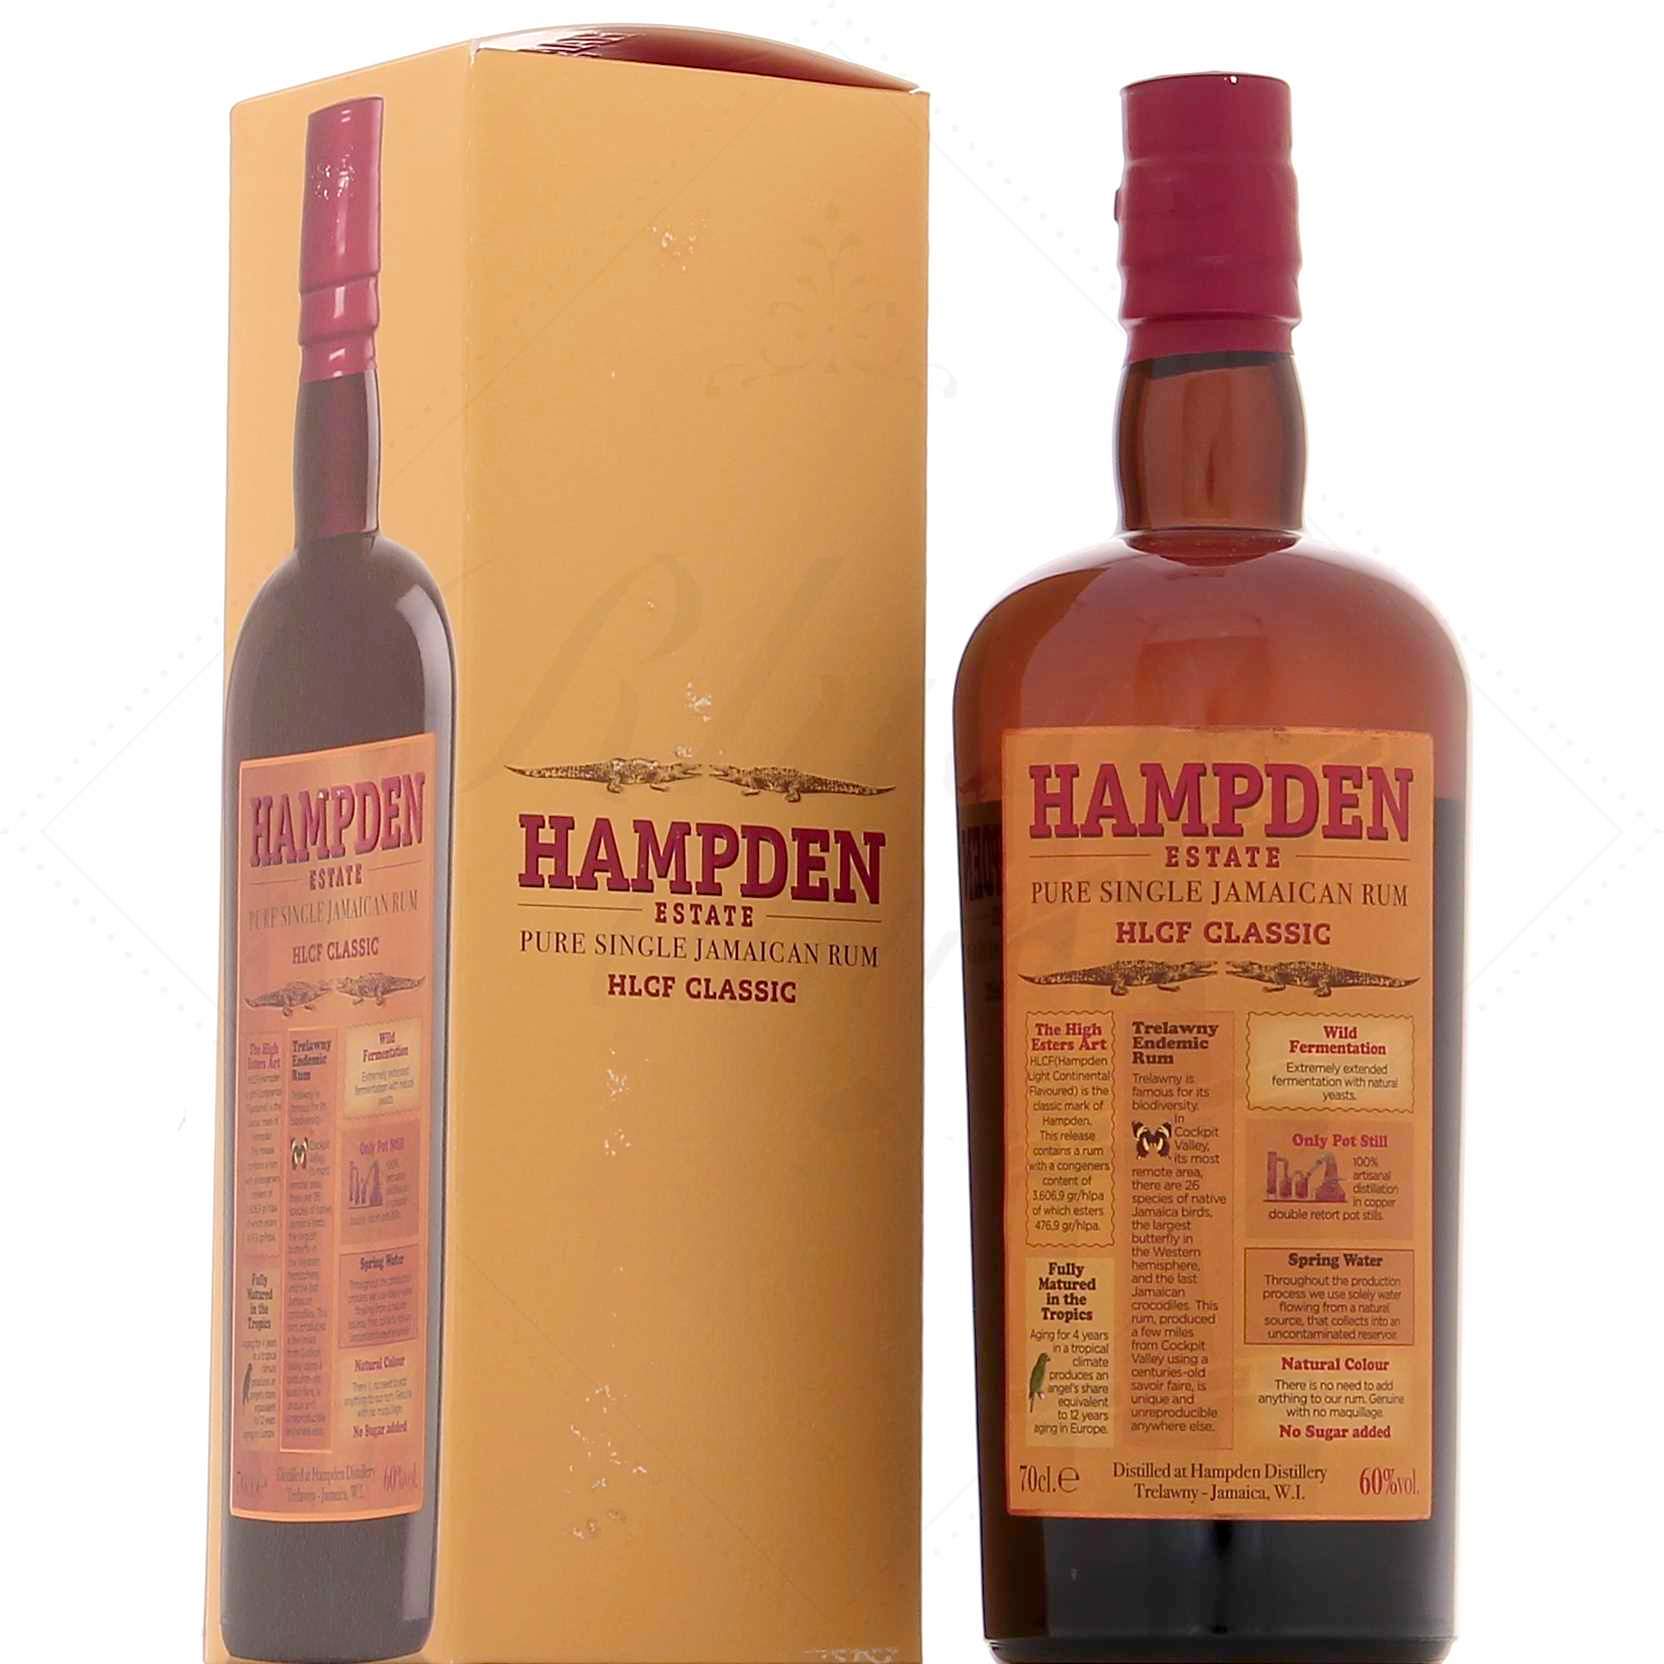 Hampden HLCF Classic Overproof 60